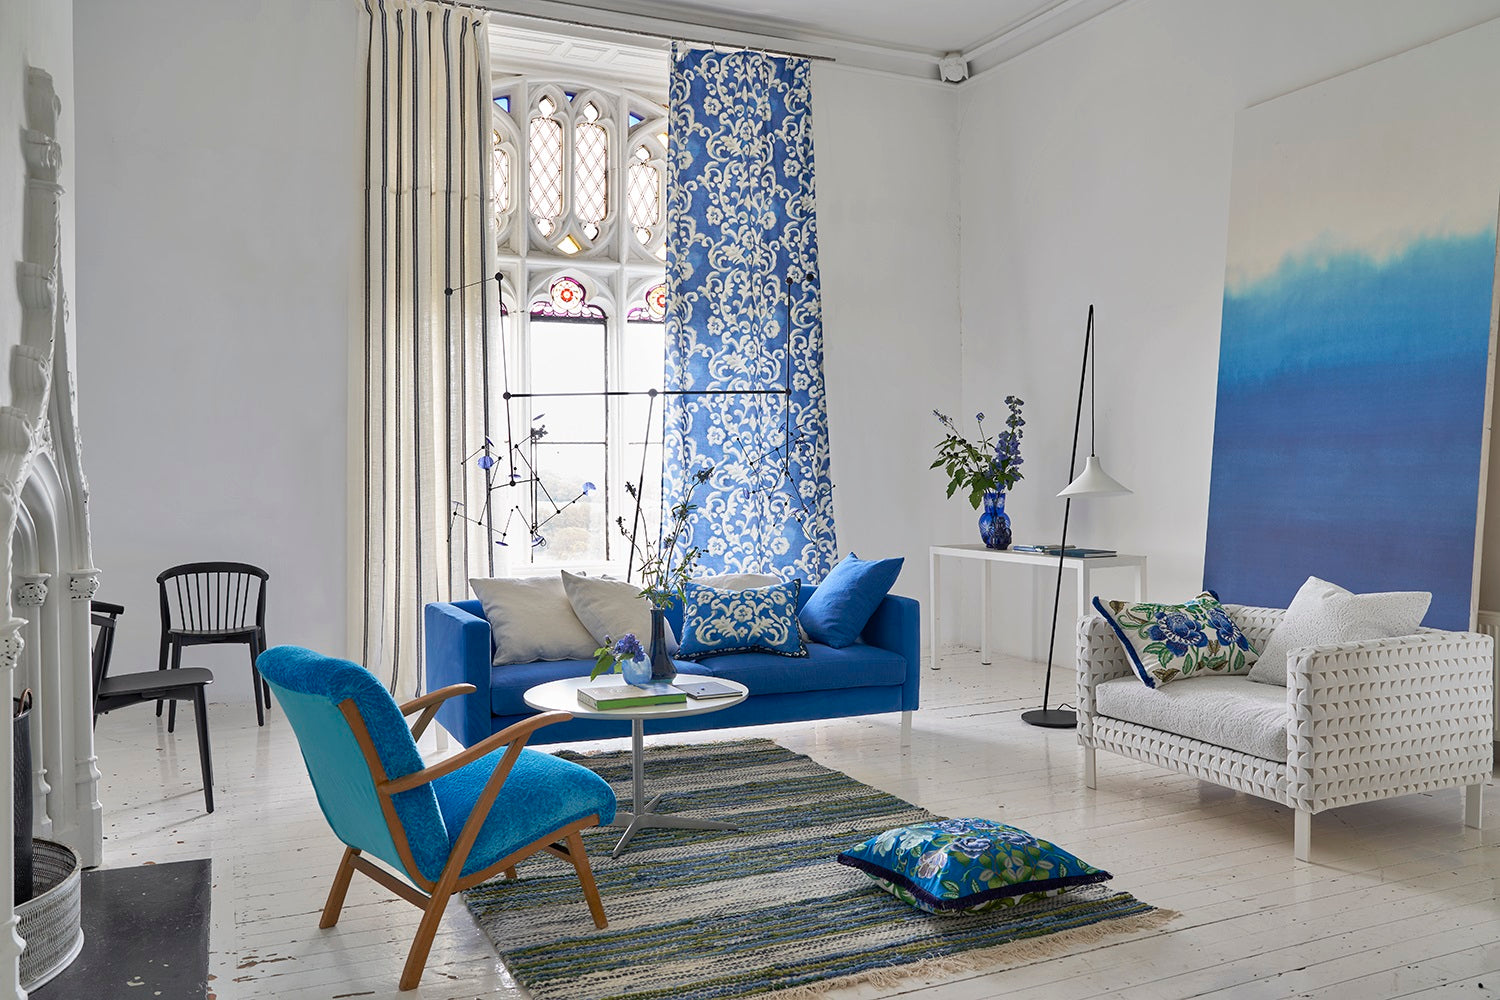 Wohnen in Blauer Ästhetik: Wie die Farbe Blau unser Zuhause verzaubert